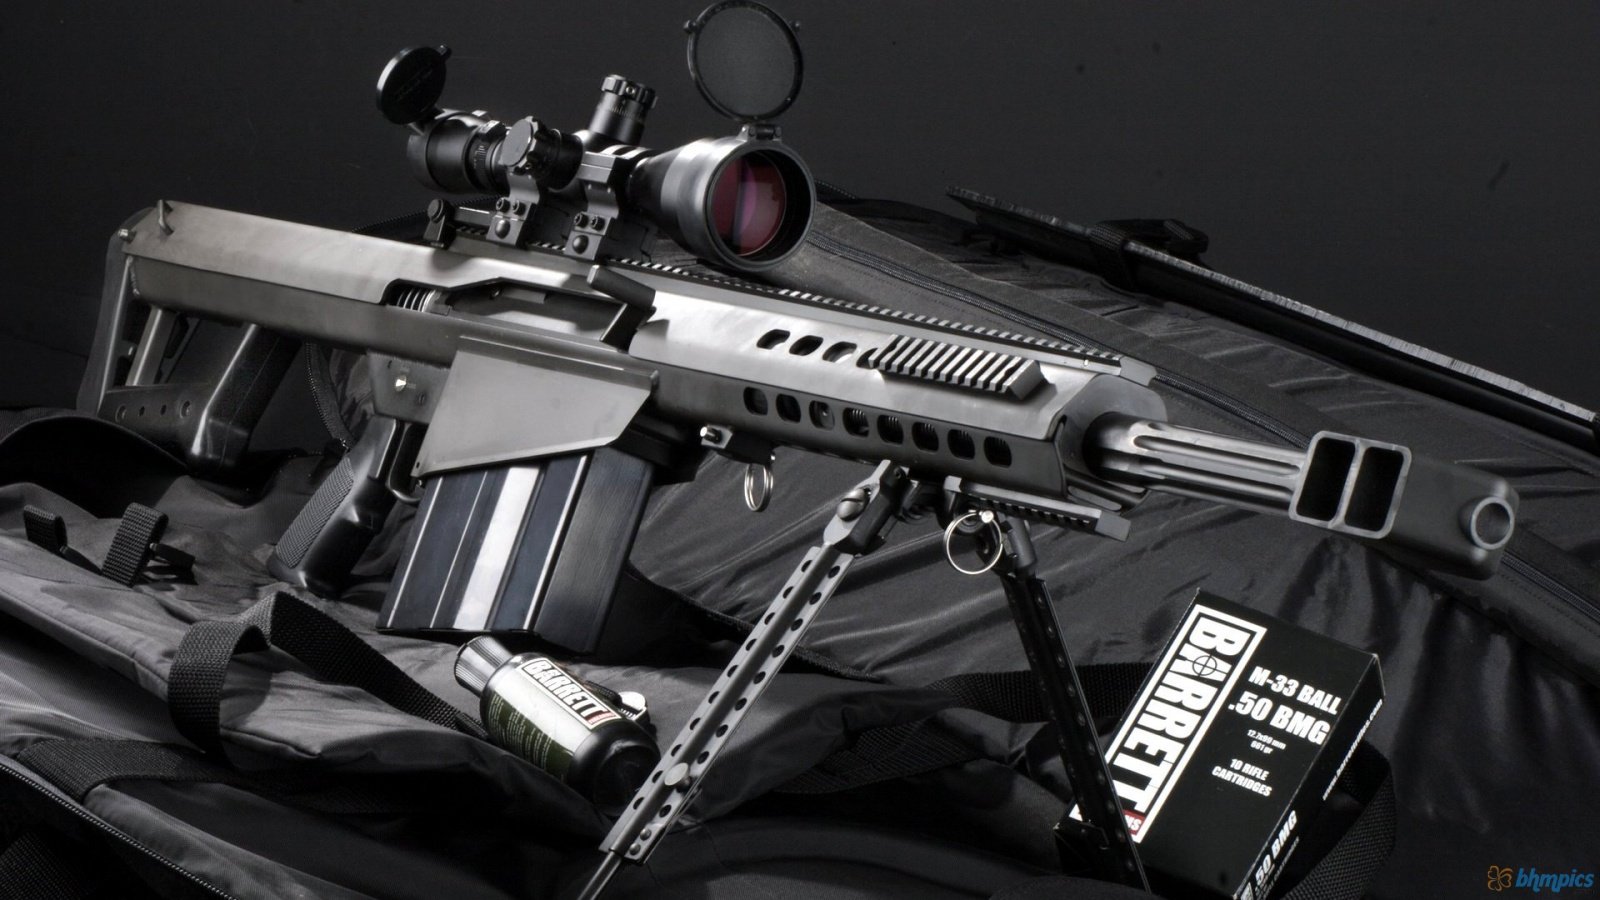 Sniper Rifle M82a1 1600x900 1788 HD Wallpaper Res 1600x900 1600x900